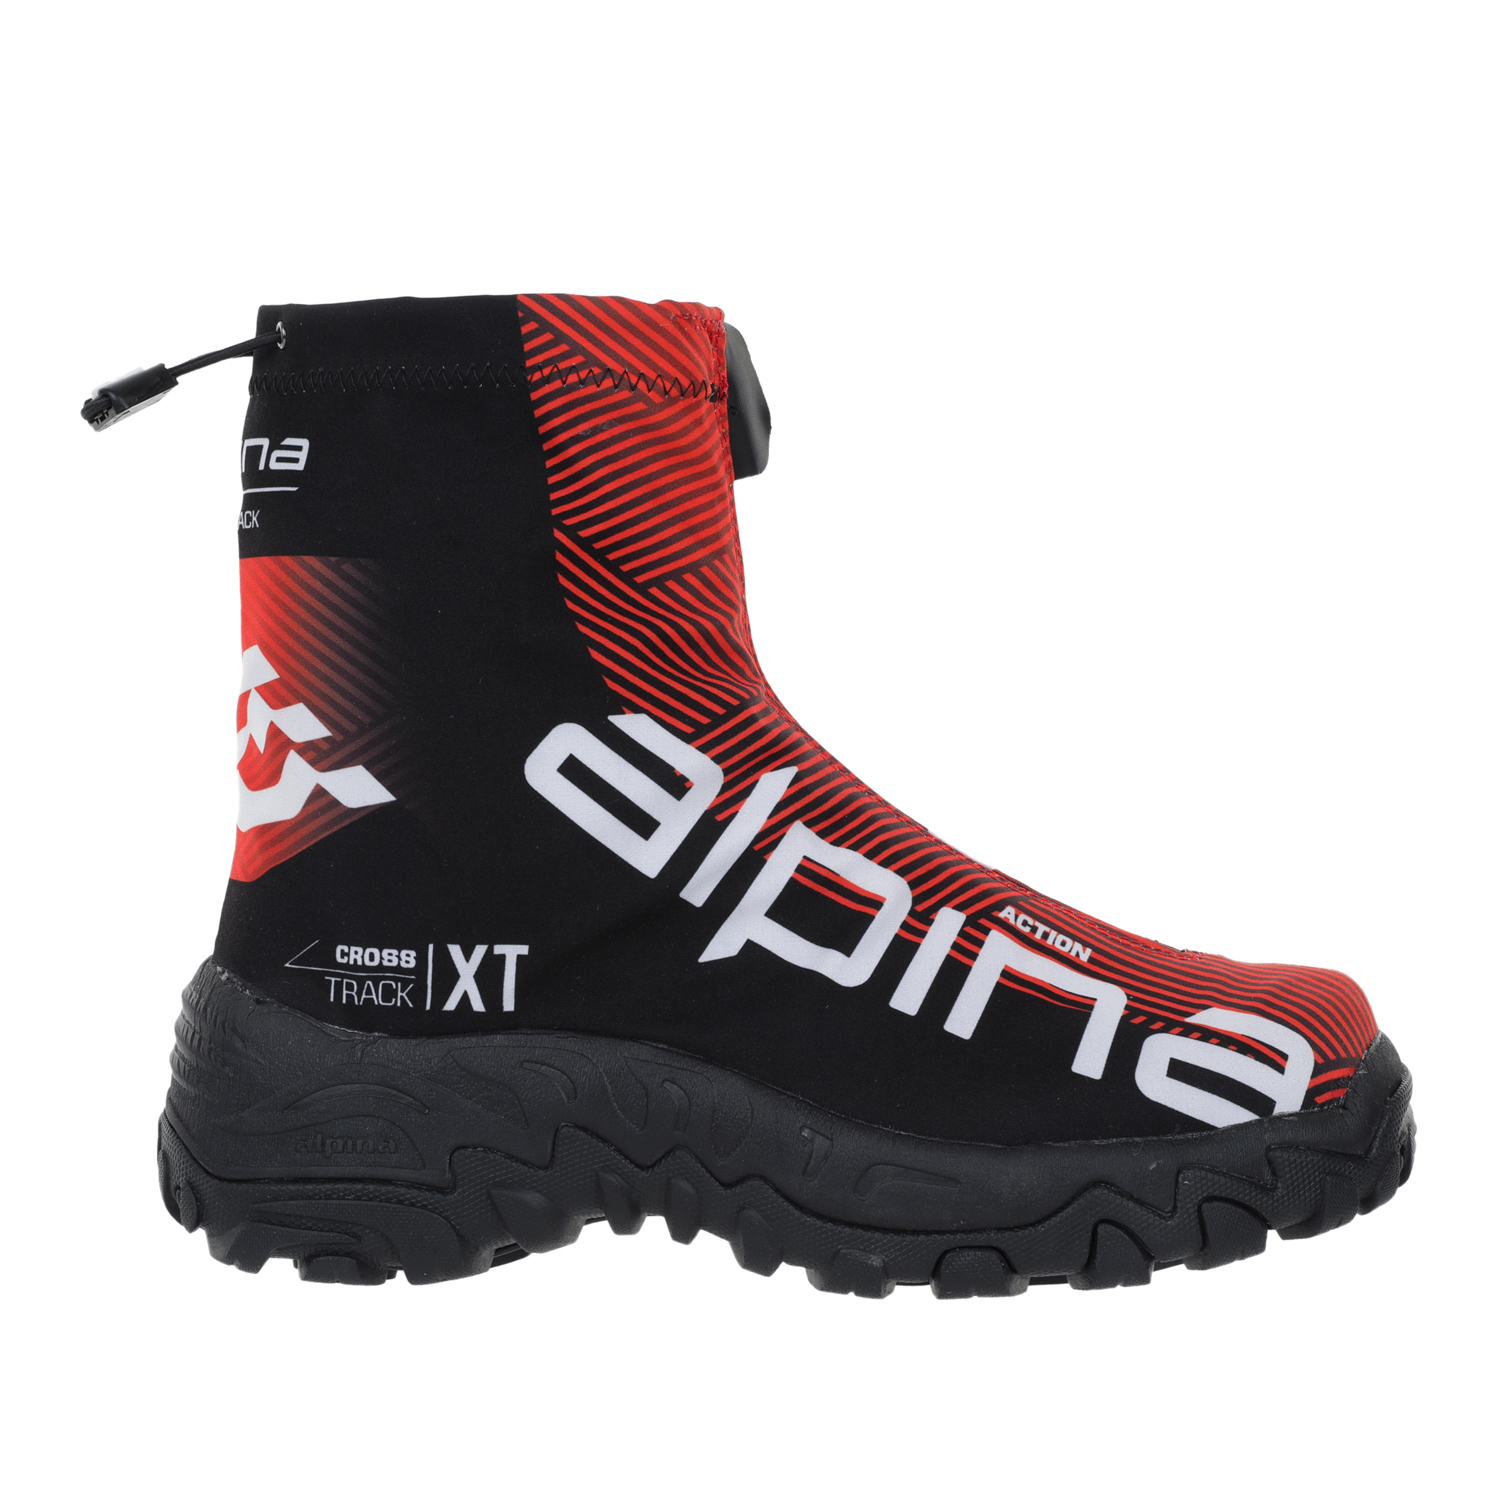 Ботинки Alpina Xt Action, red/black/white, 43 EU